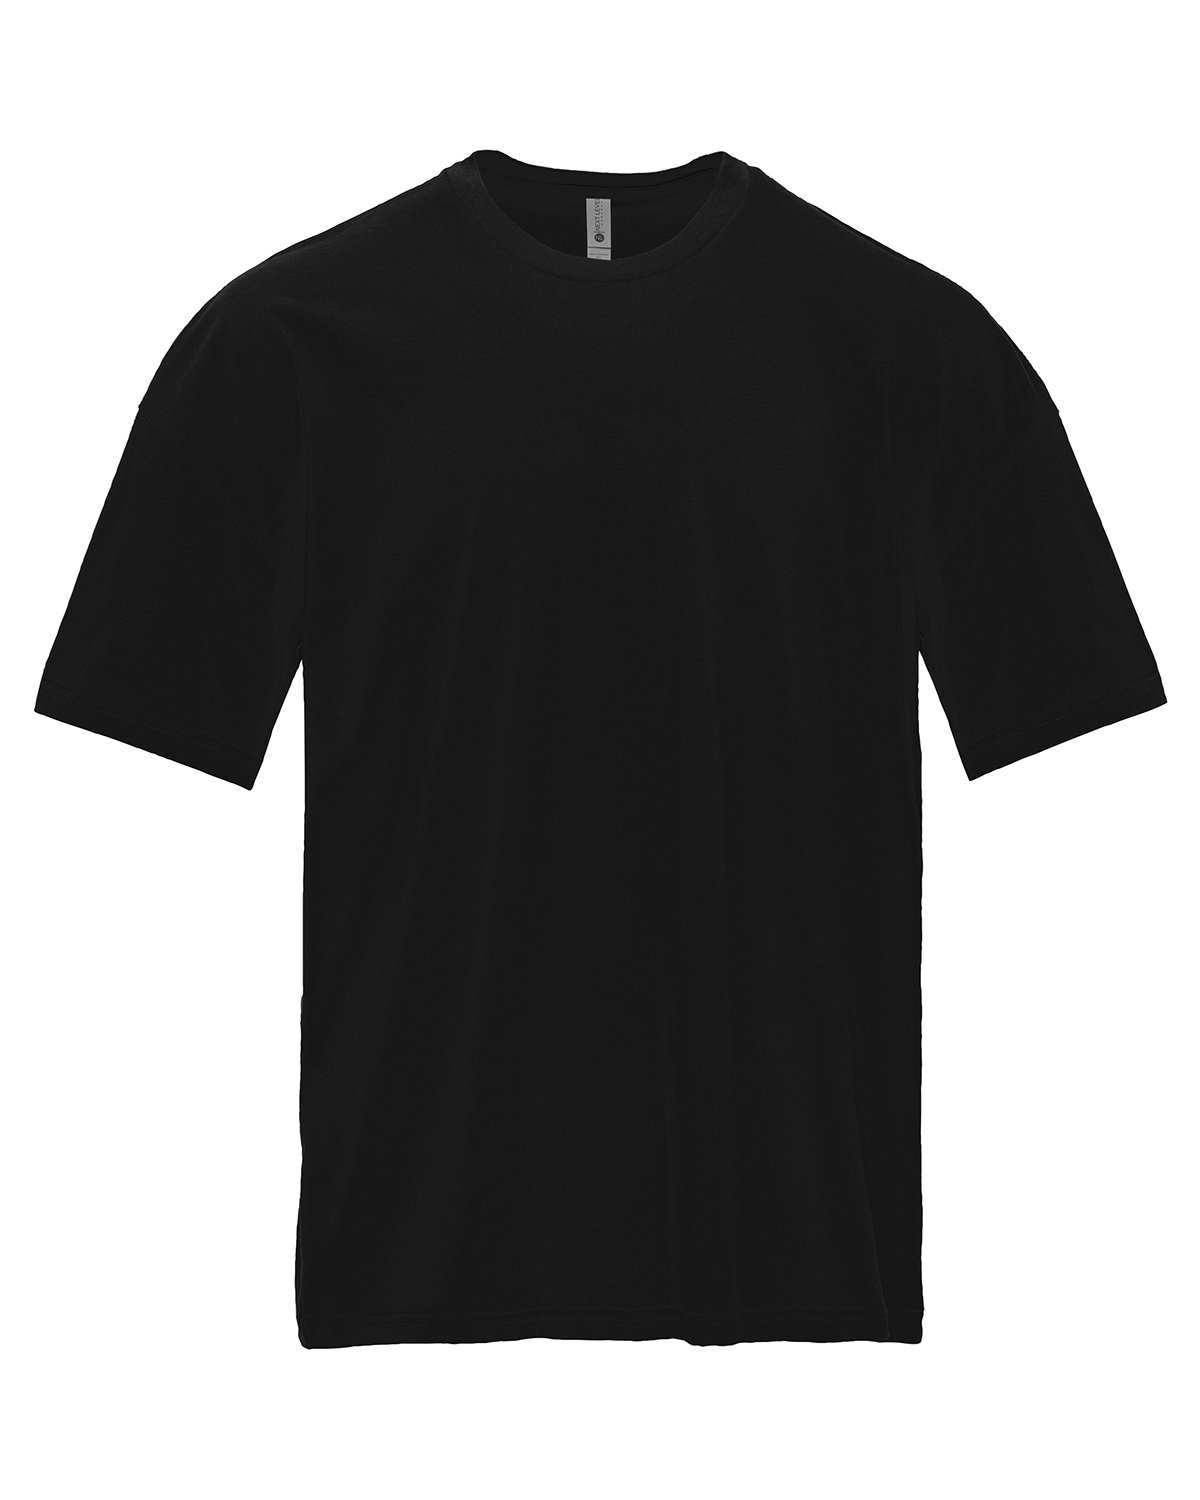 Next Level Apparel 7200 - Heavyweight Cotton T-Shirt